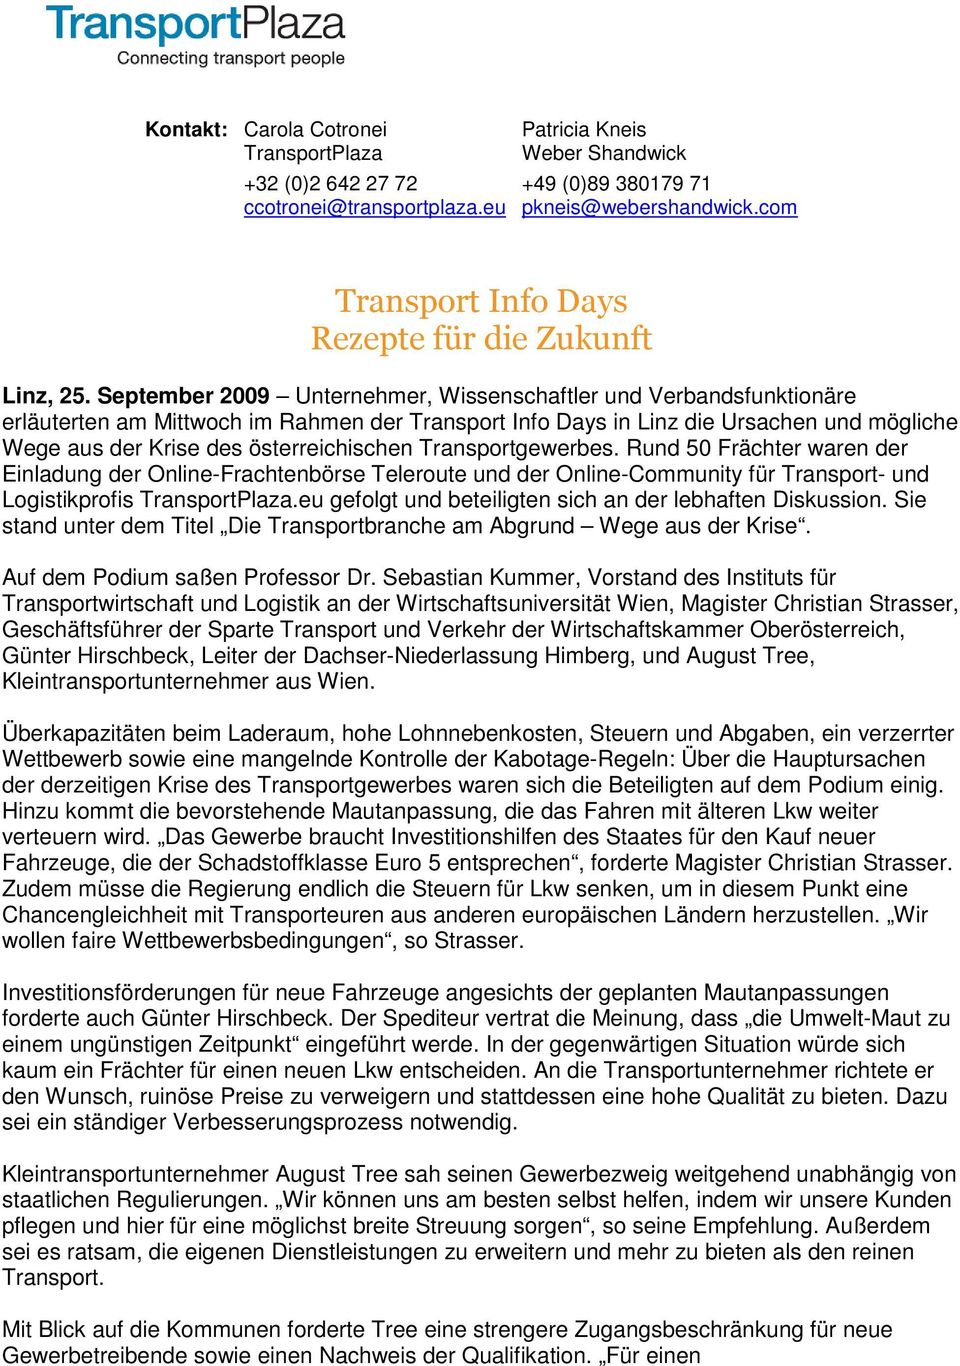 September 2009 Unternehmer, Wissenschaftler und Verbandsfunktinäre erläuterten am Mittwch im Rahmen der Transprt Inf Days in Linz die Ursachen und mögliche Wege aus der Krise des österreichischen